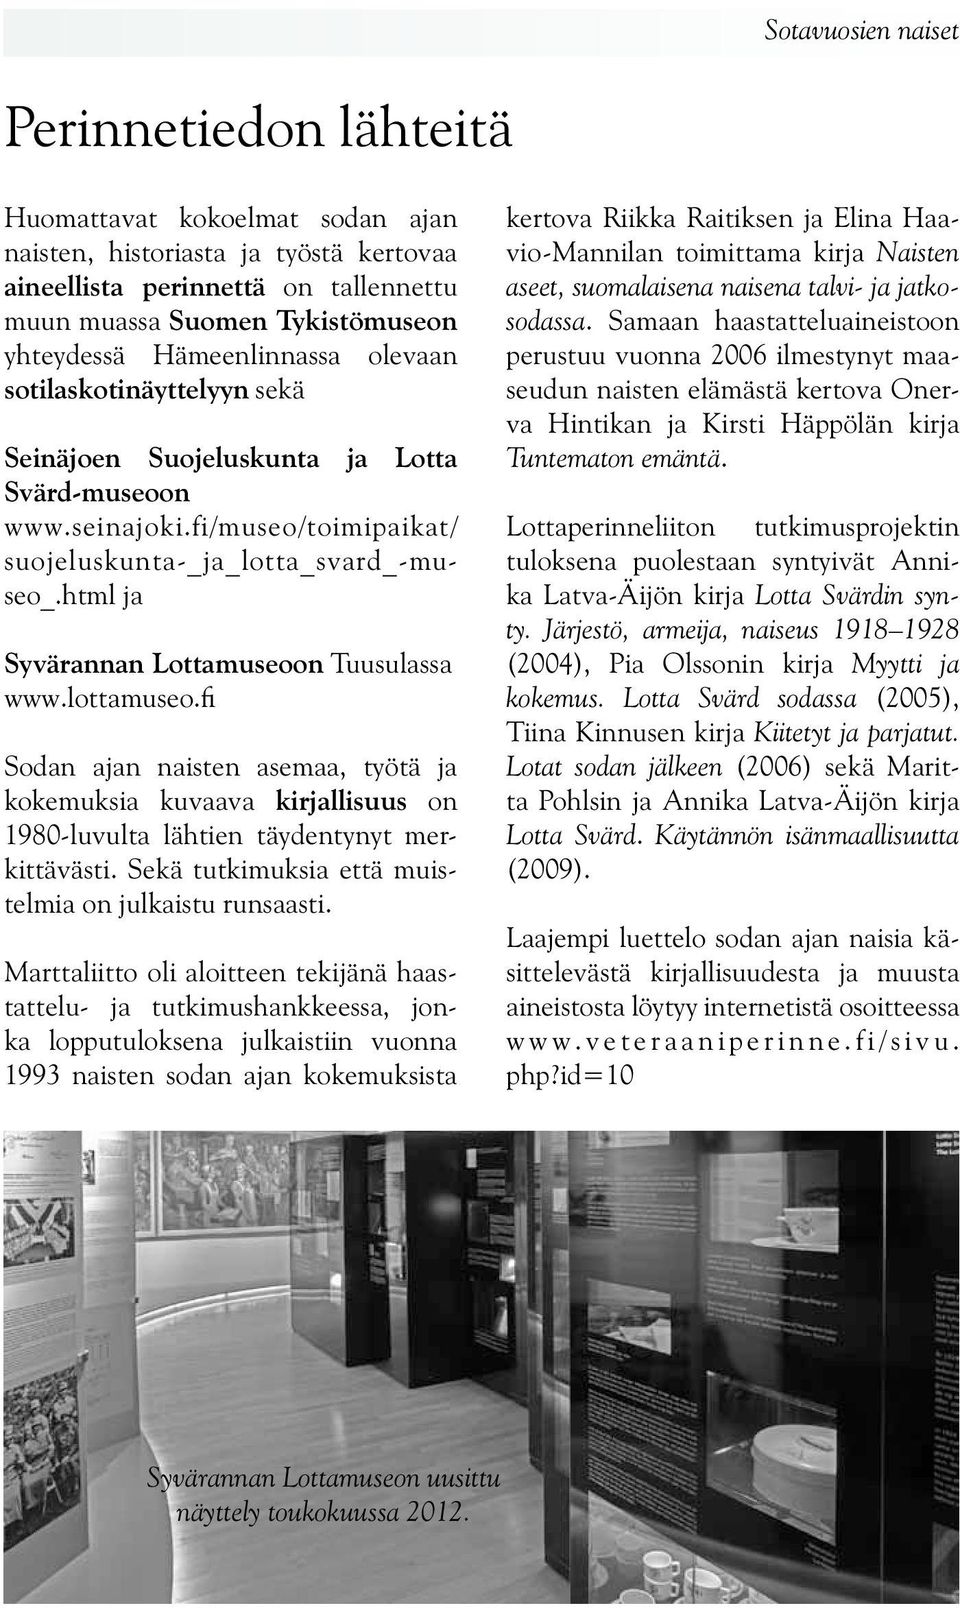 html ja Syvärannan Lottamuseoon Tuusulassa www.lottamuseo.fi Sodan ajan naisten asemaa, työtä ja kokemuksia kuvaava kirjallisuus on 1980-luvulta lähtien täydentynyt merkittävästi.